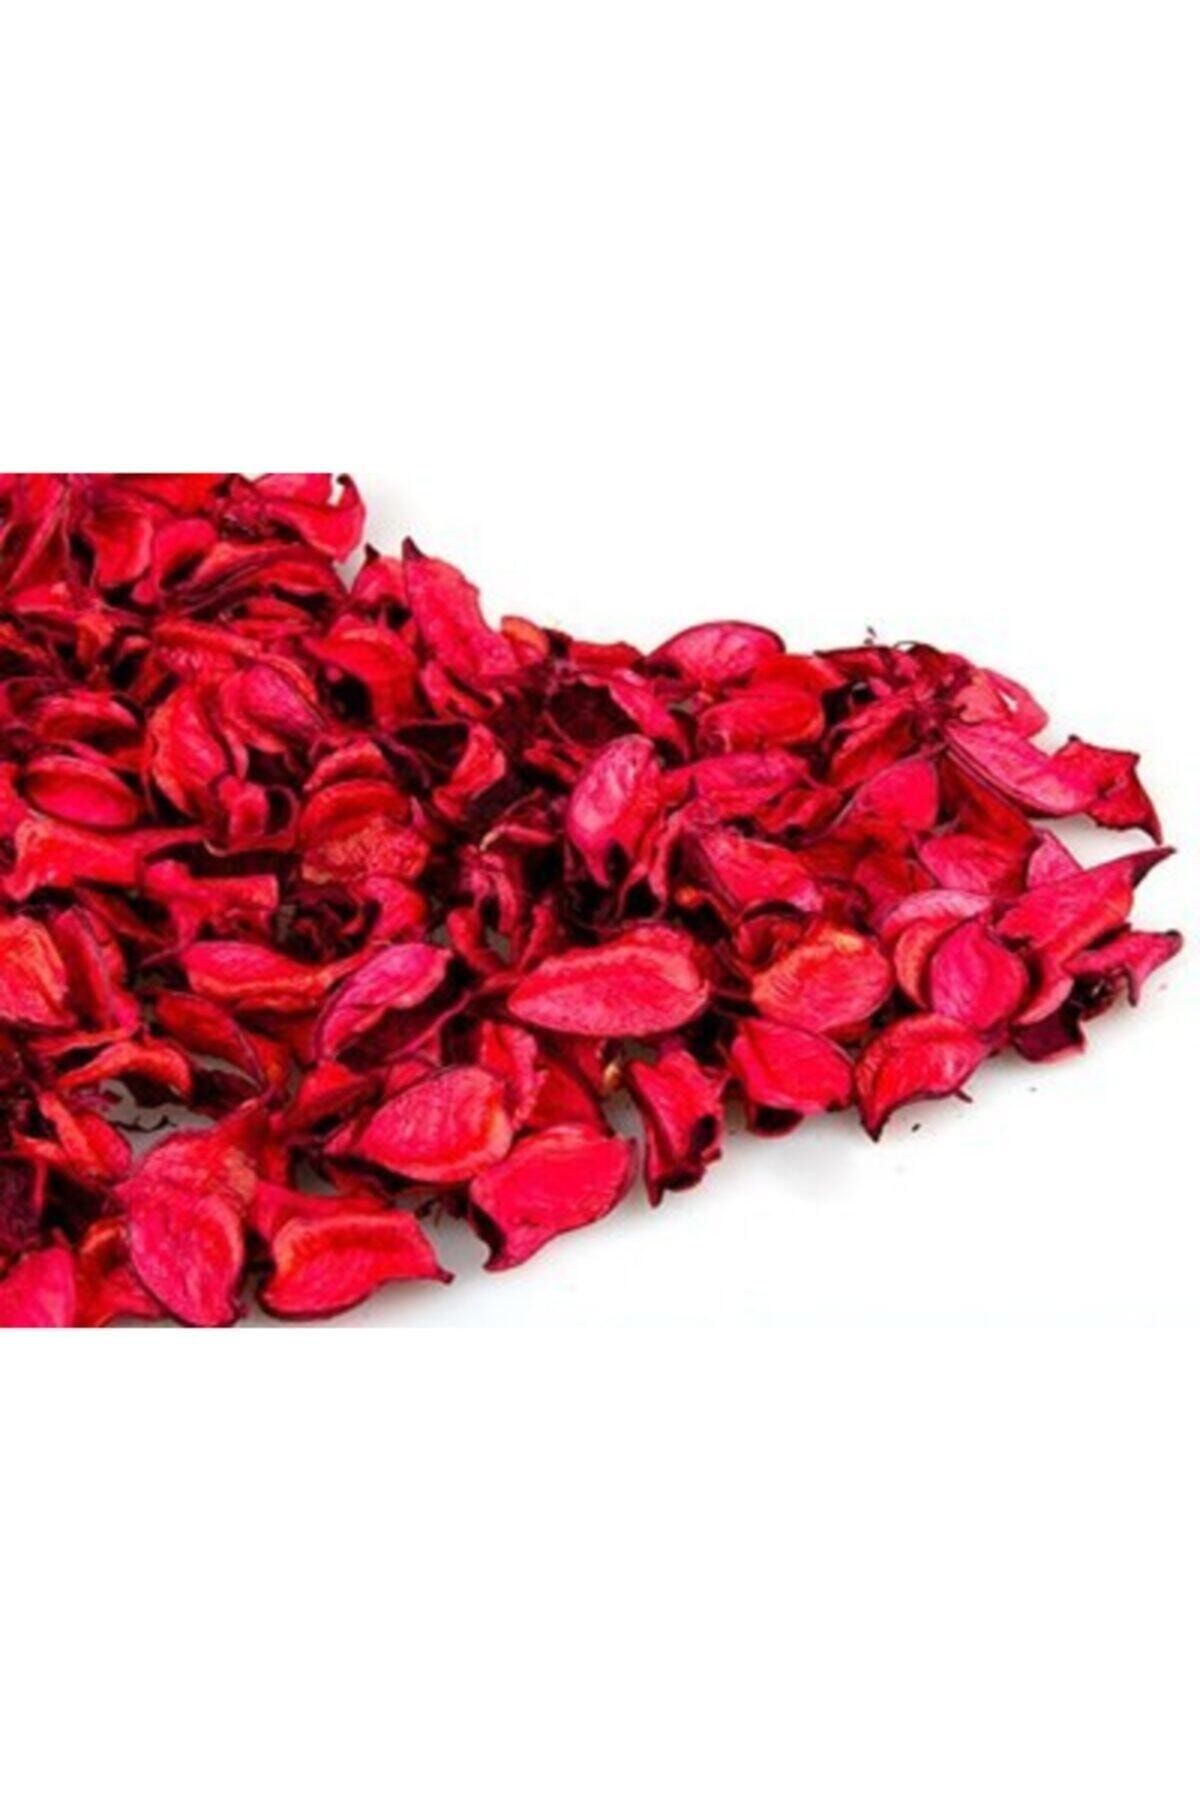 Genel Markalar Agem Elit Sevgiliye Özel Kokulu Gerçek Kurutulmuş Gül Yaprağı Koyu Kırmızı Fiyatı 